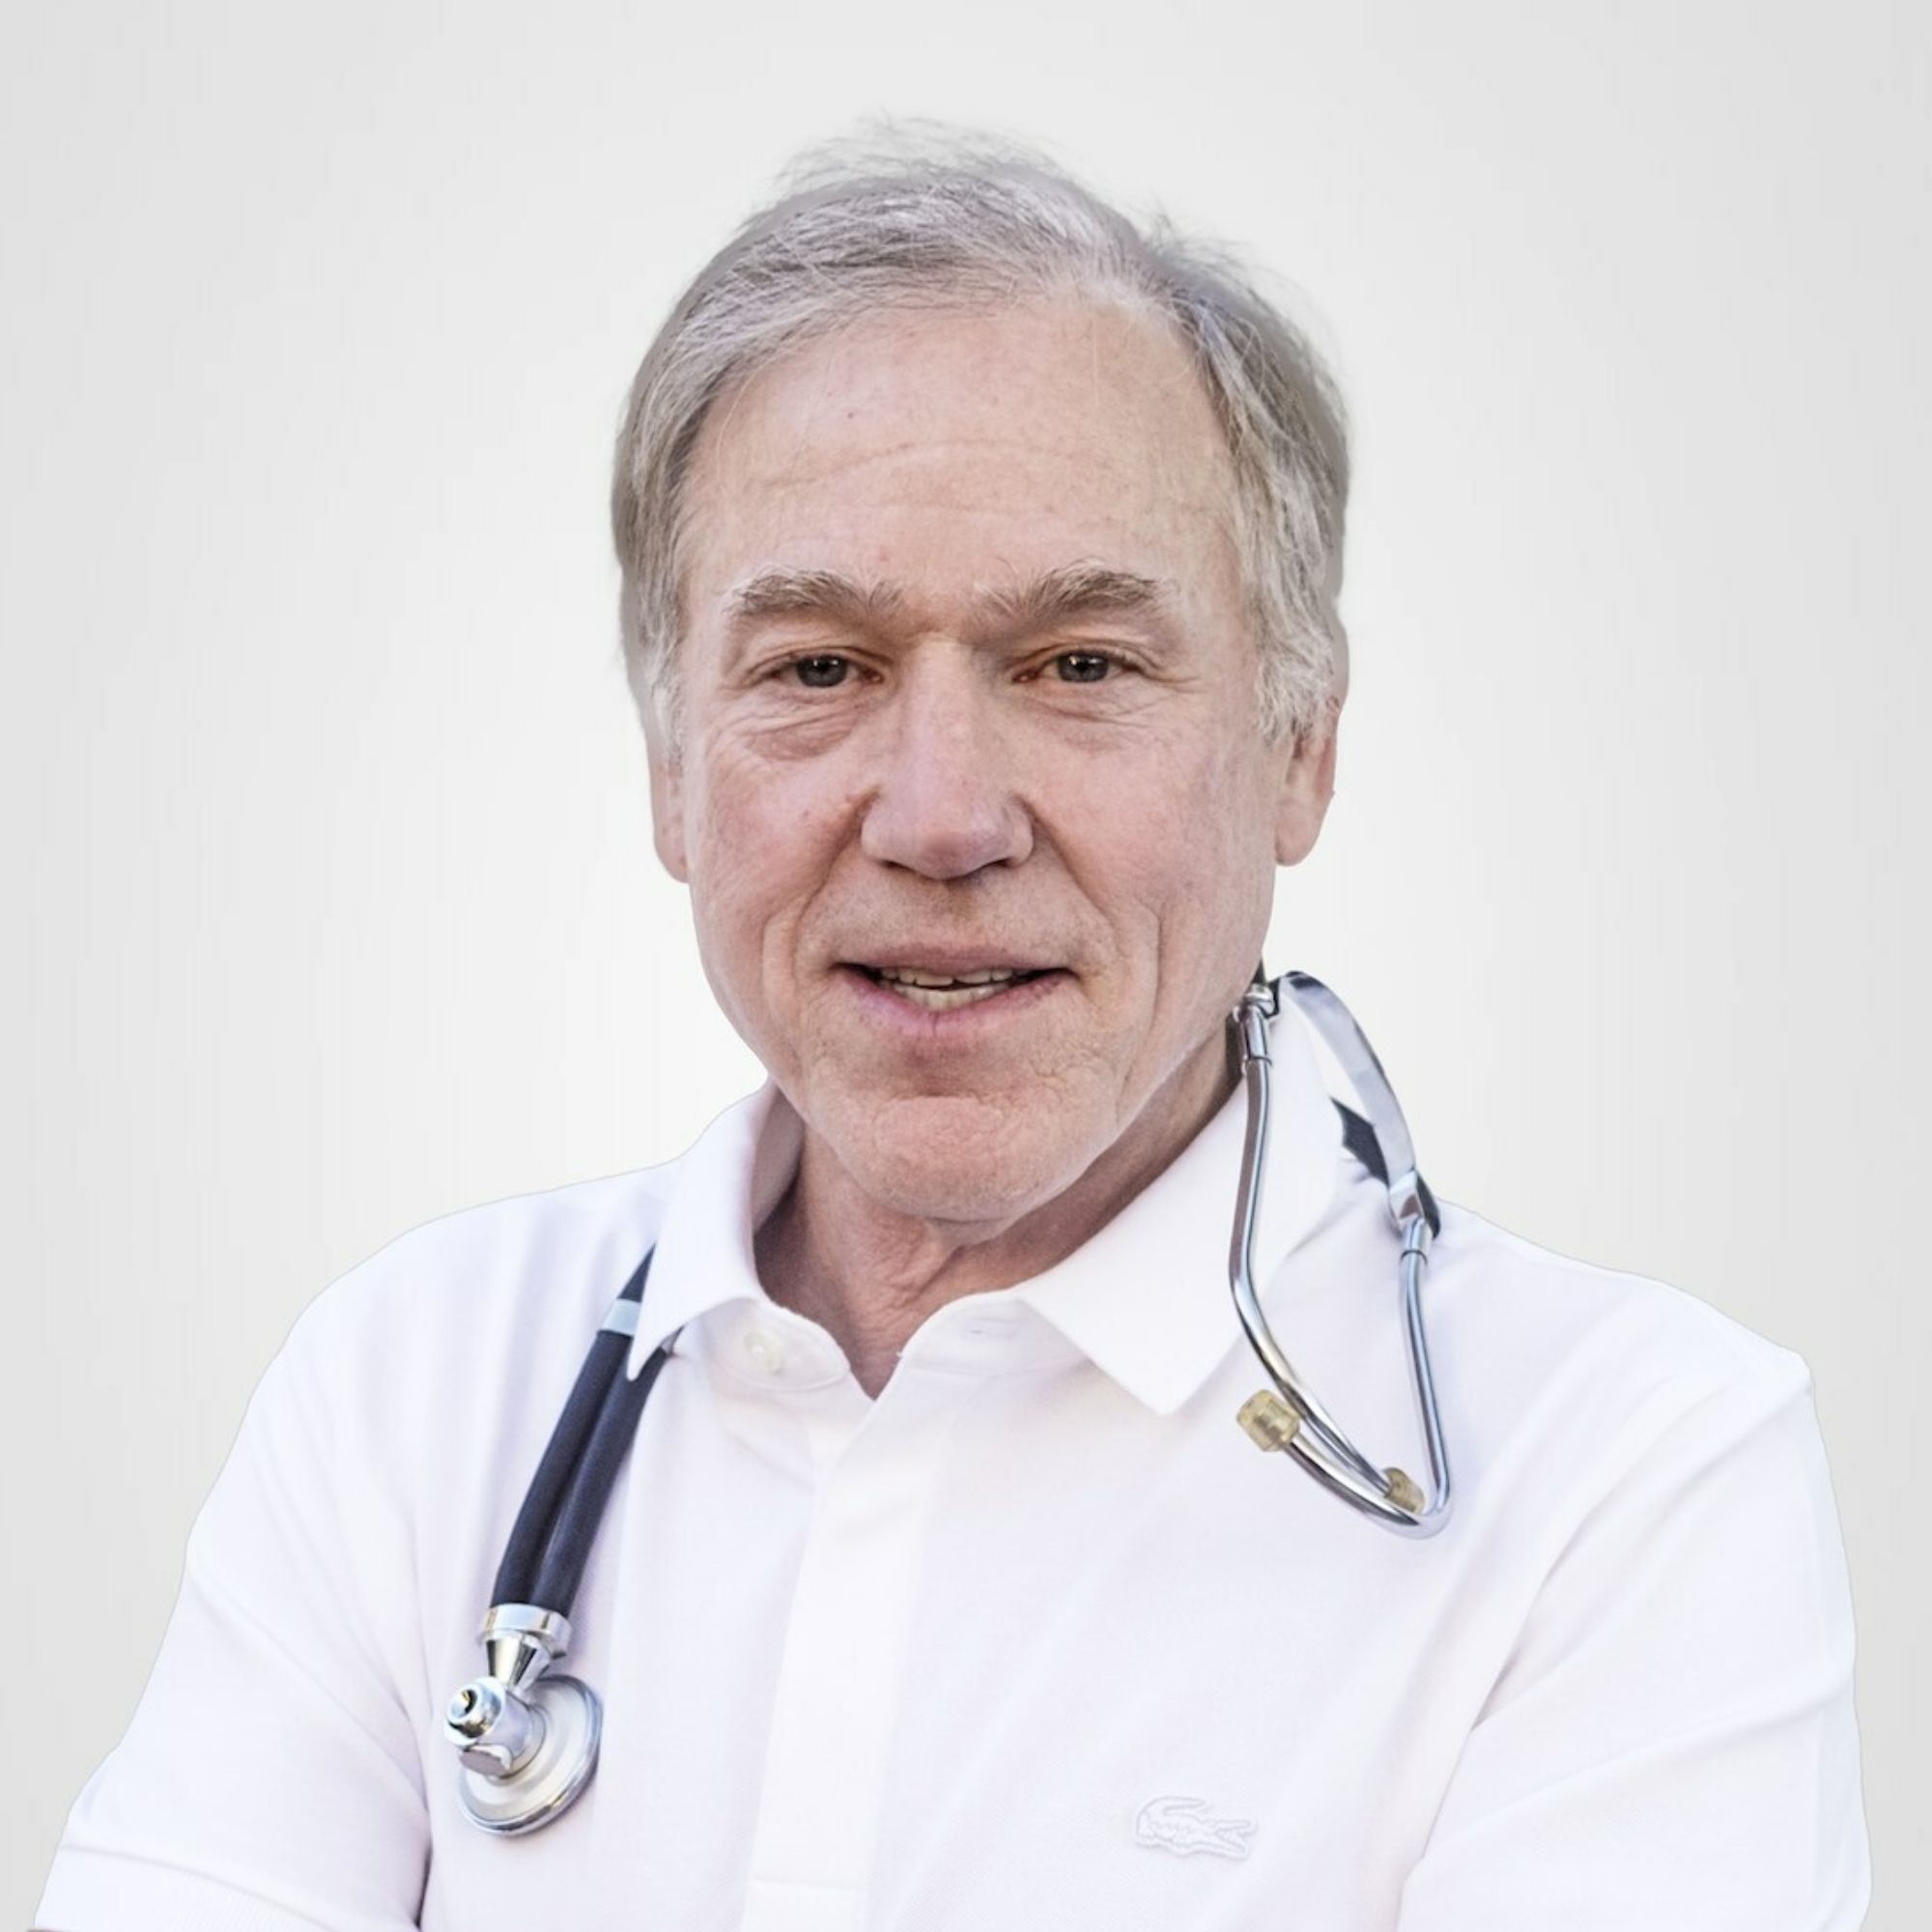 A headshot of Dr. Craig Liebenson